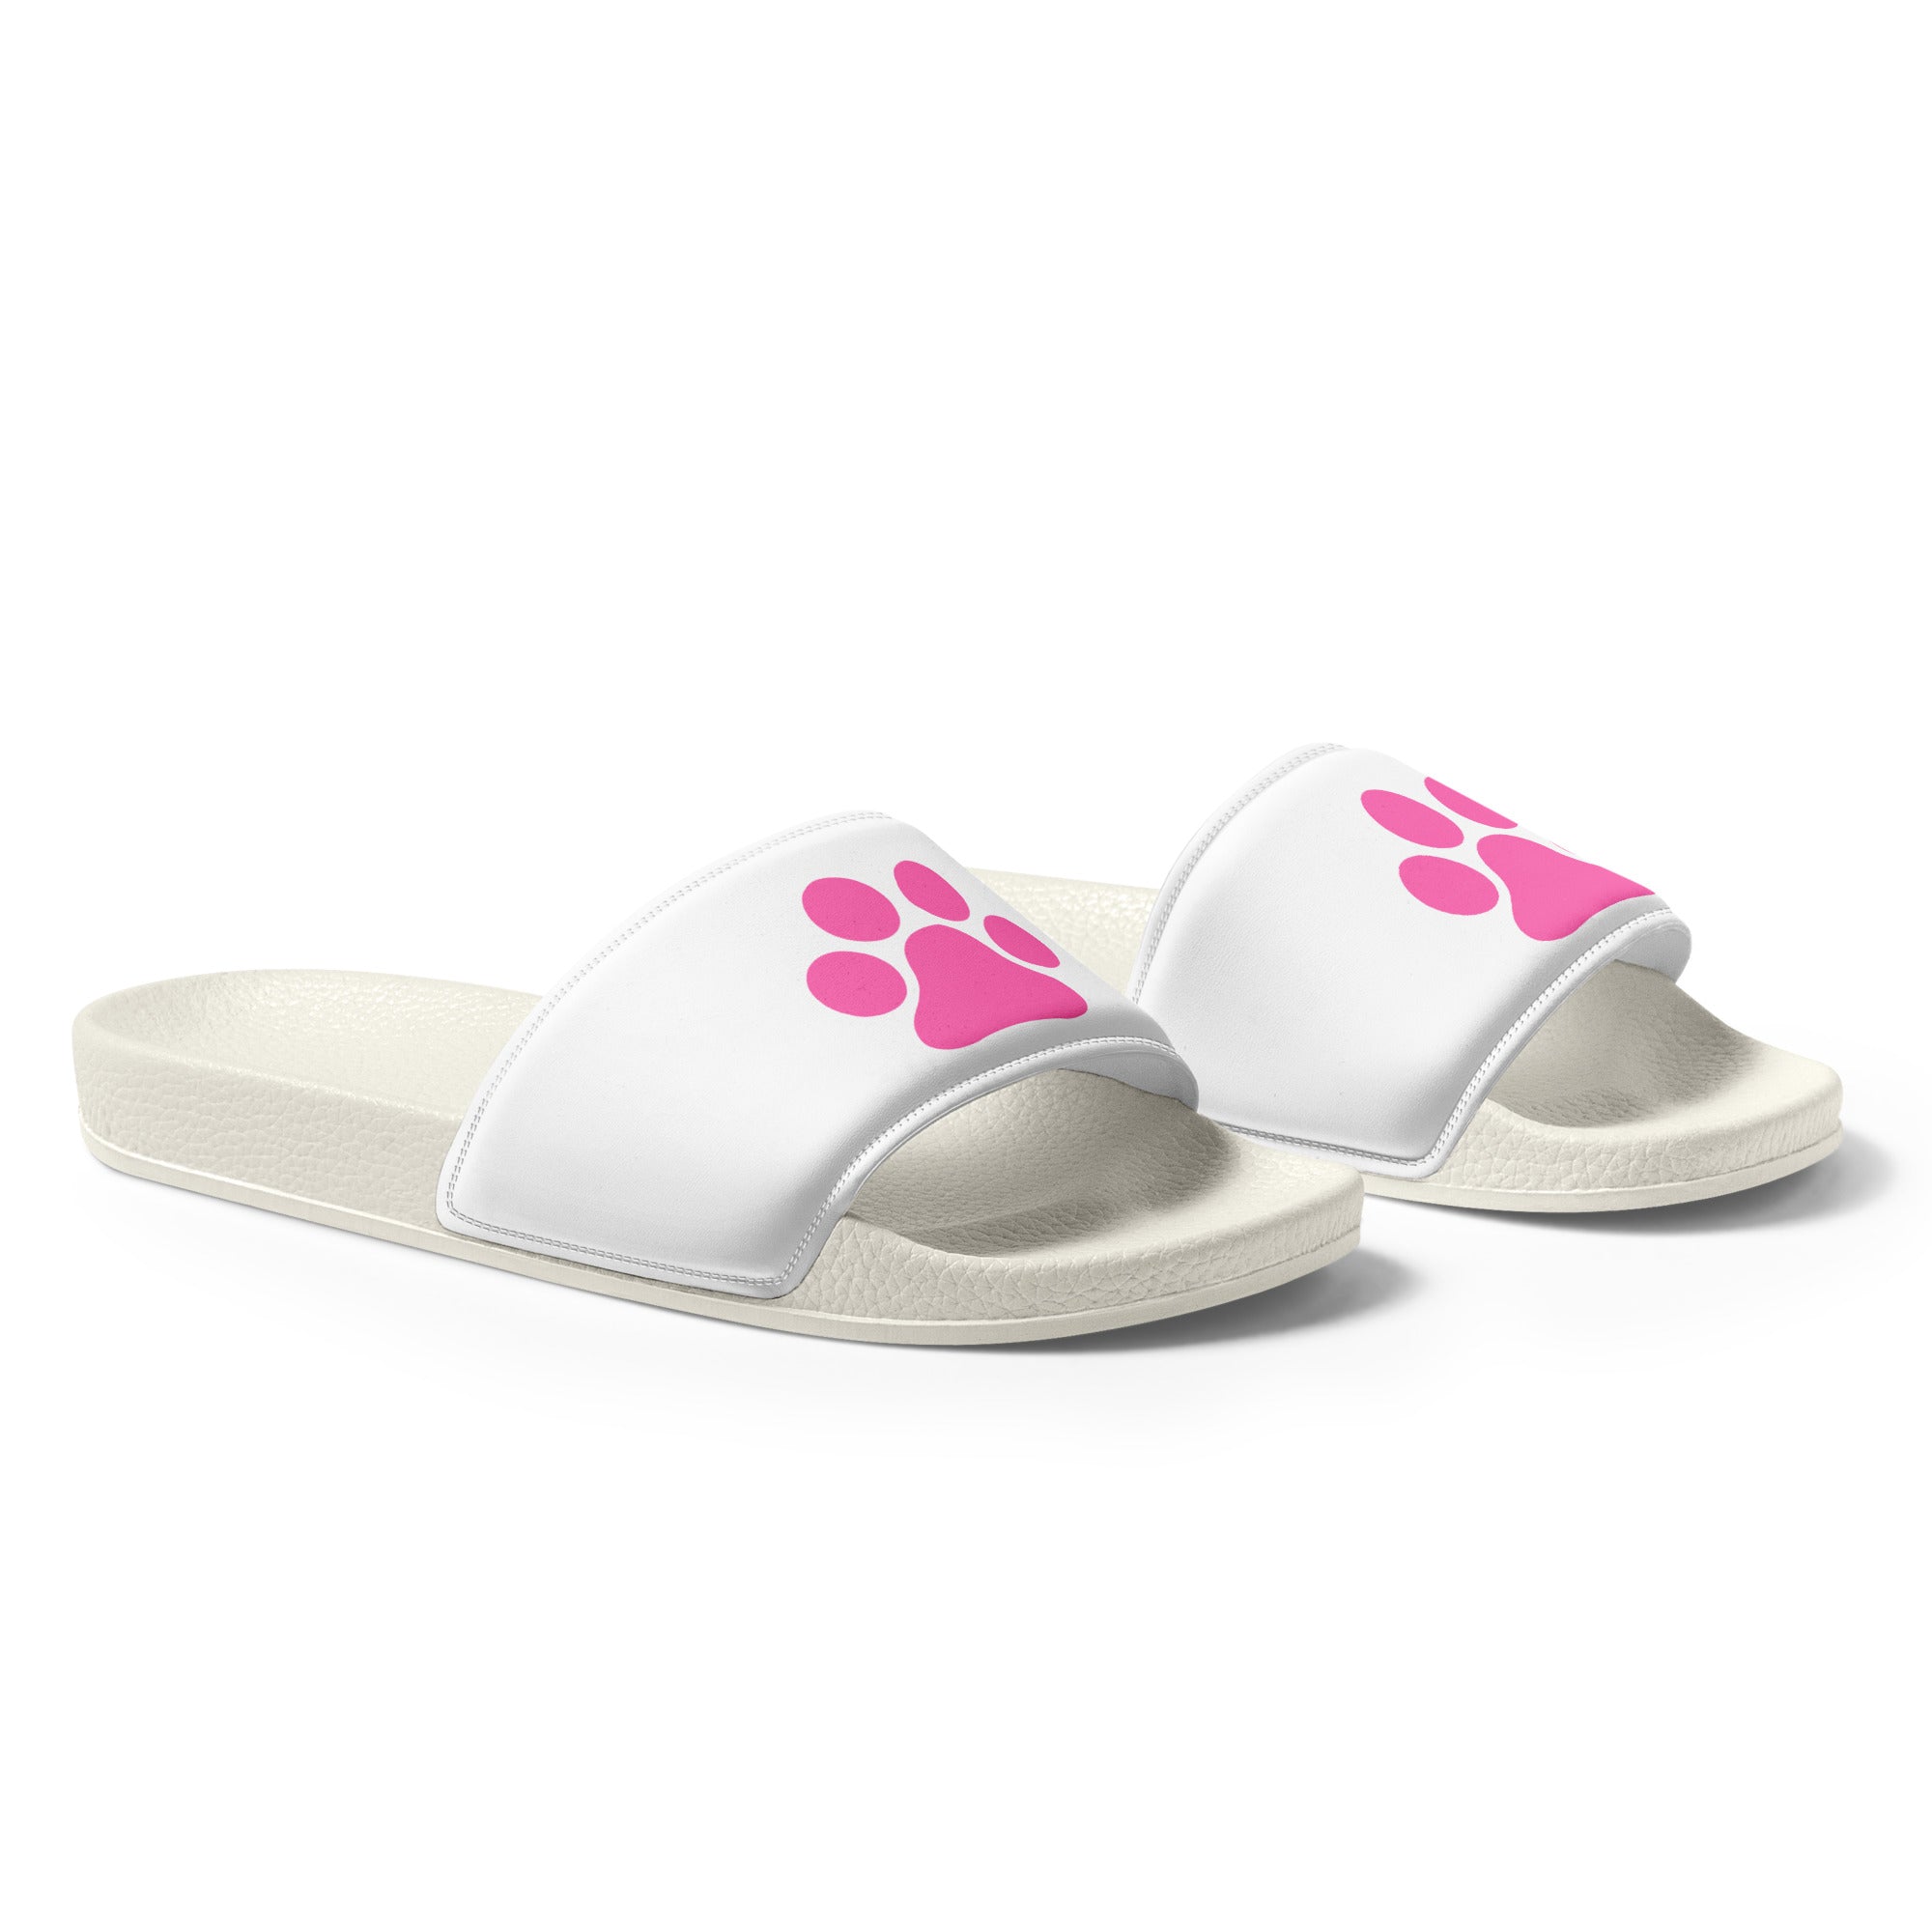 Women's Hot Pink Paw Slides